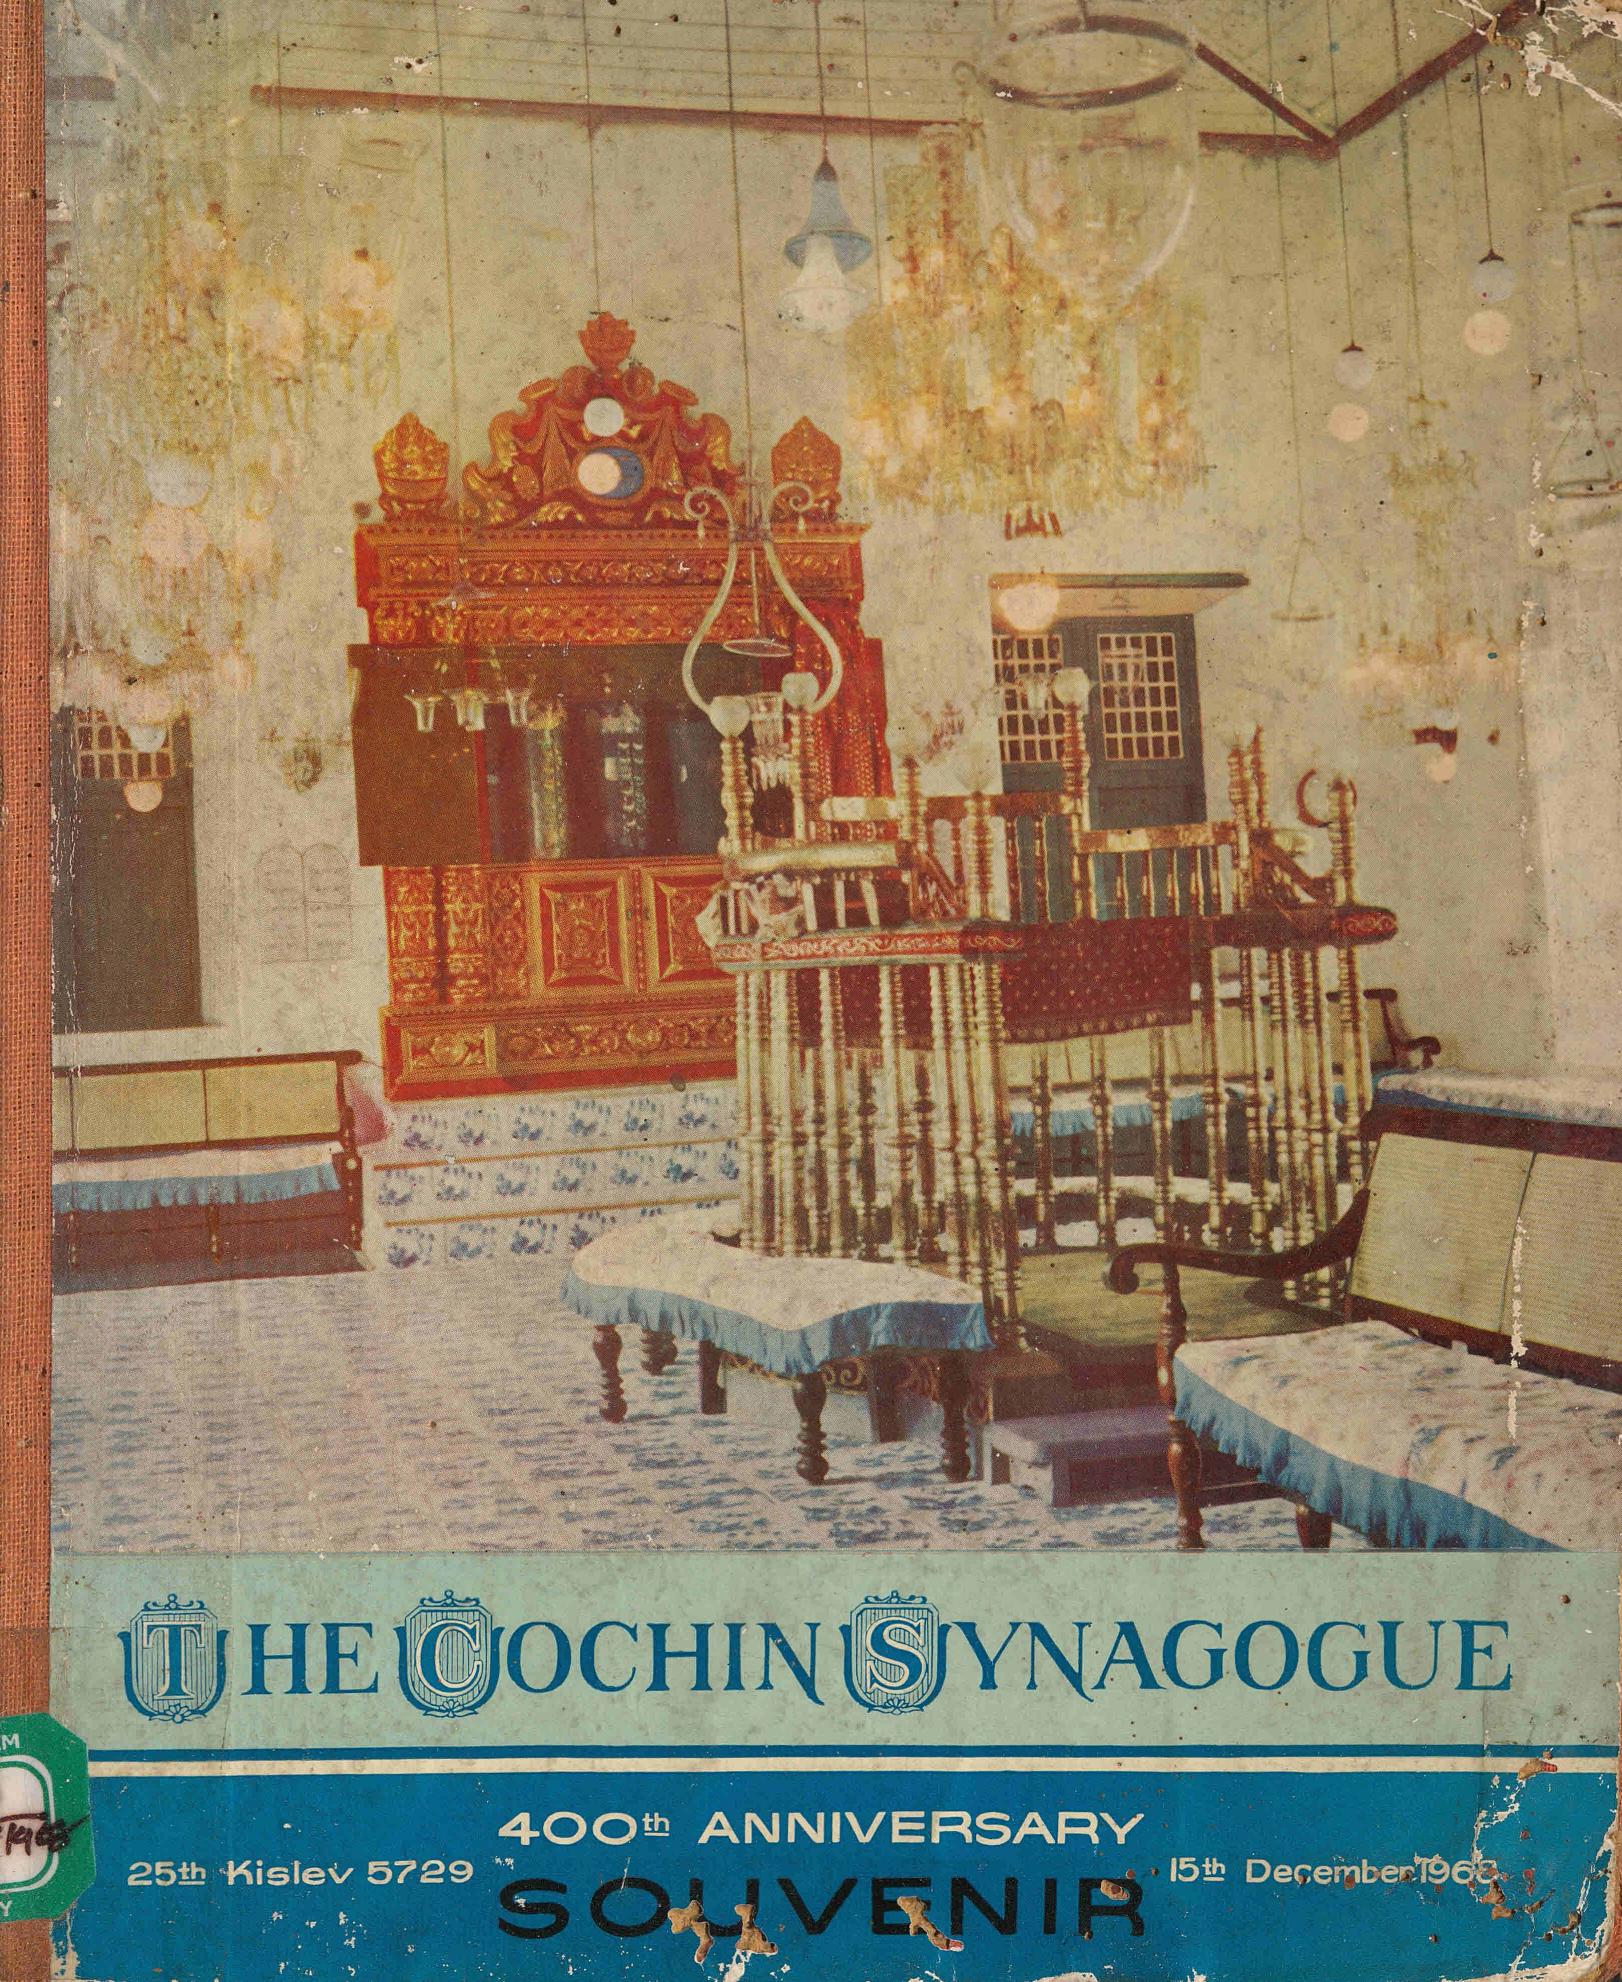 1968 - The Cochin Synagogue - 400th Anniversary Souvenir